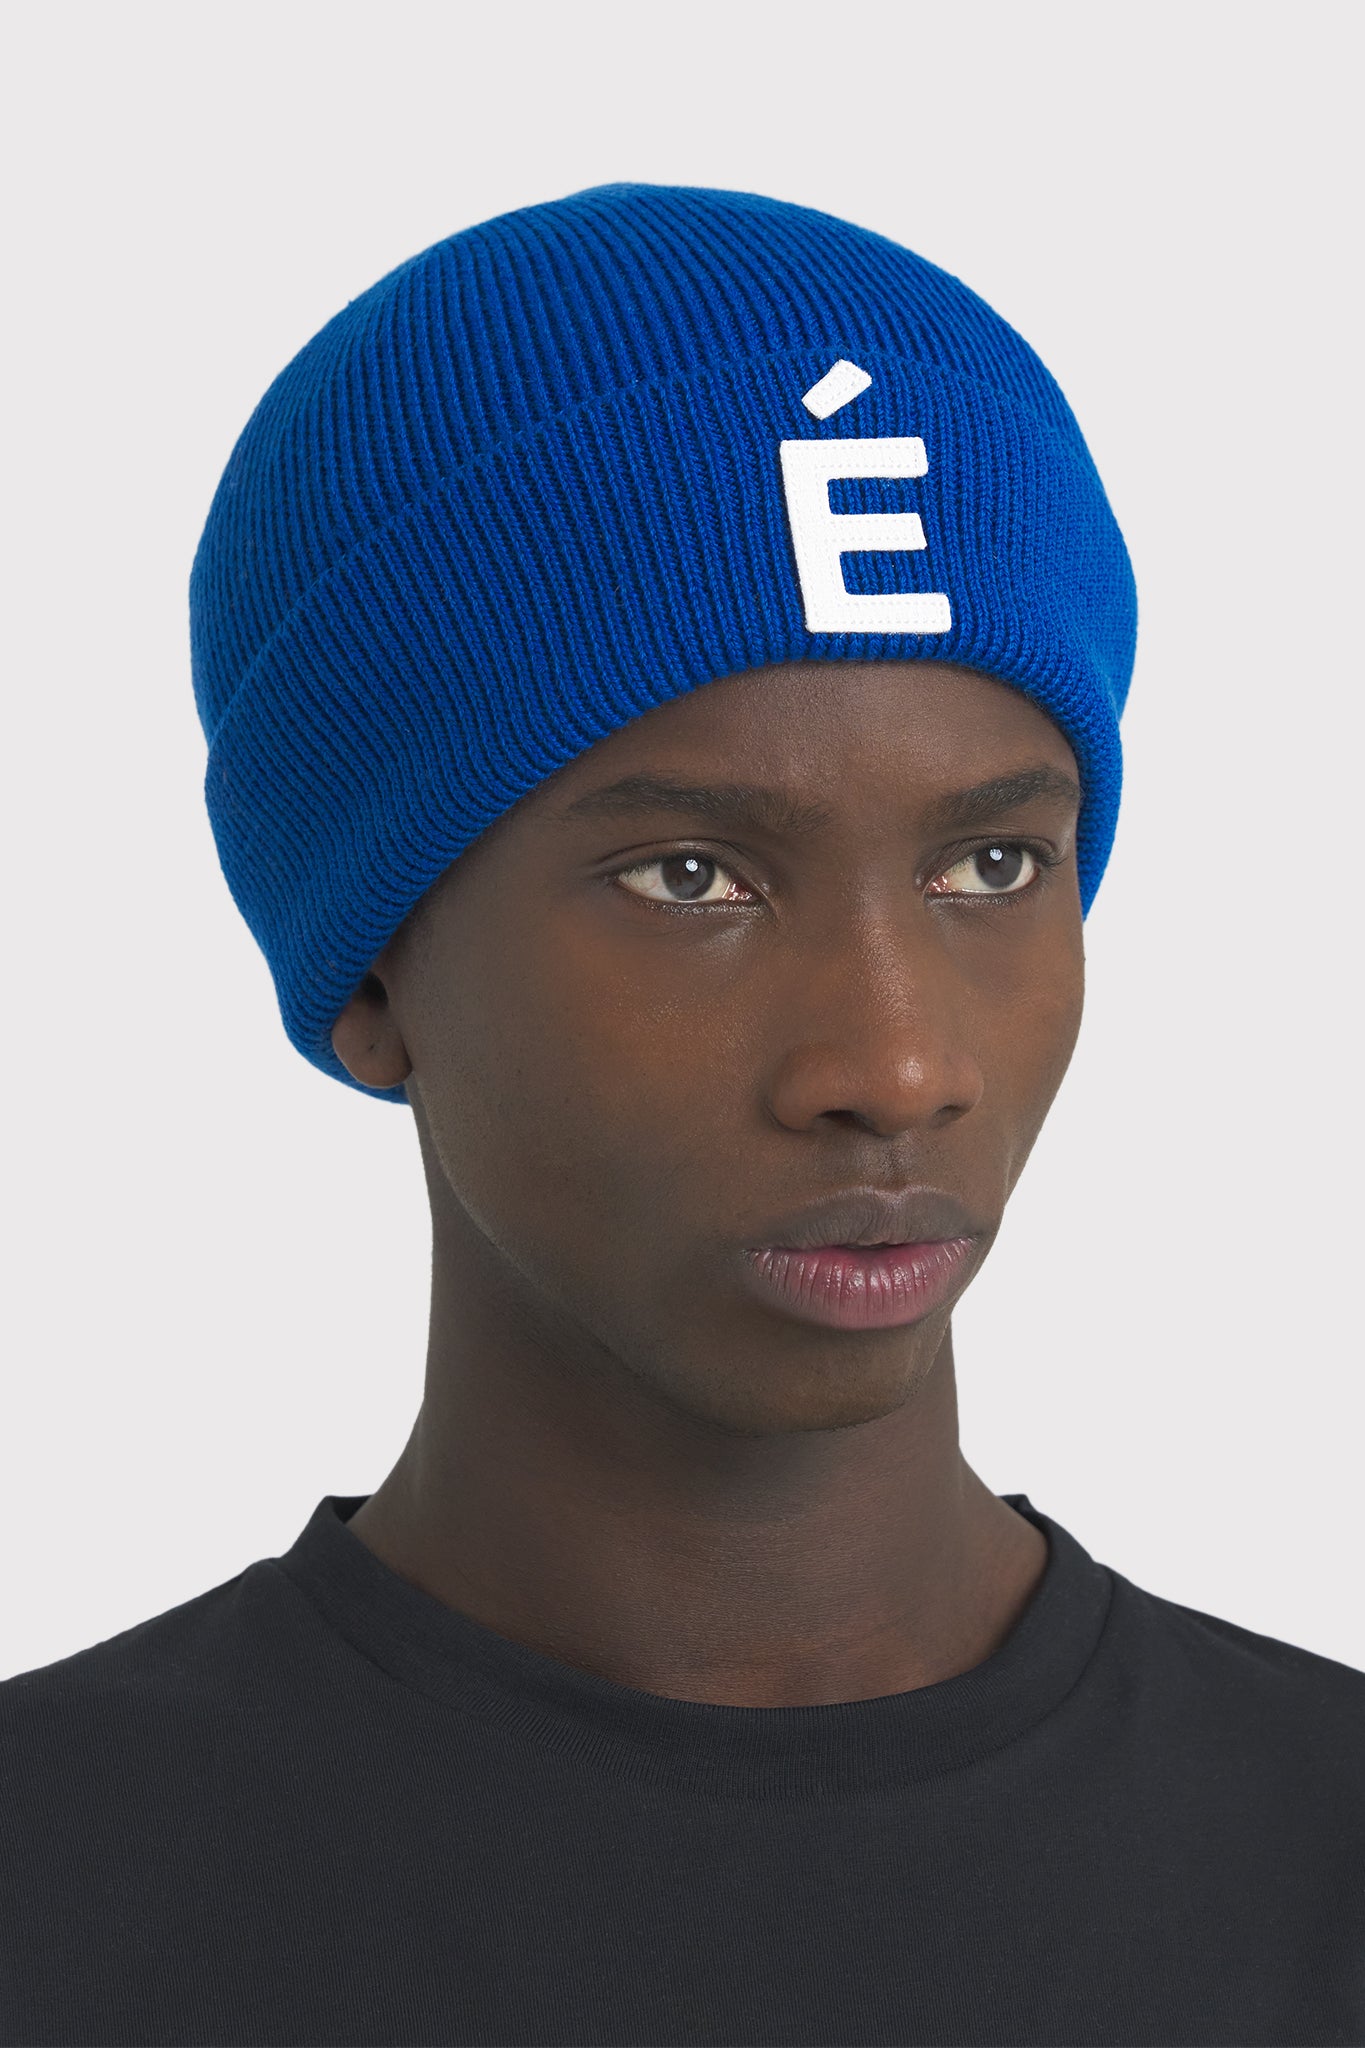 ÉTUDES BEANIE PATCH BLUE HATS 2